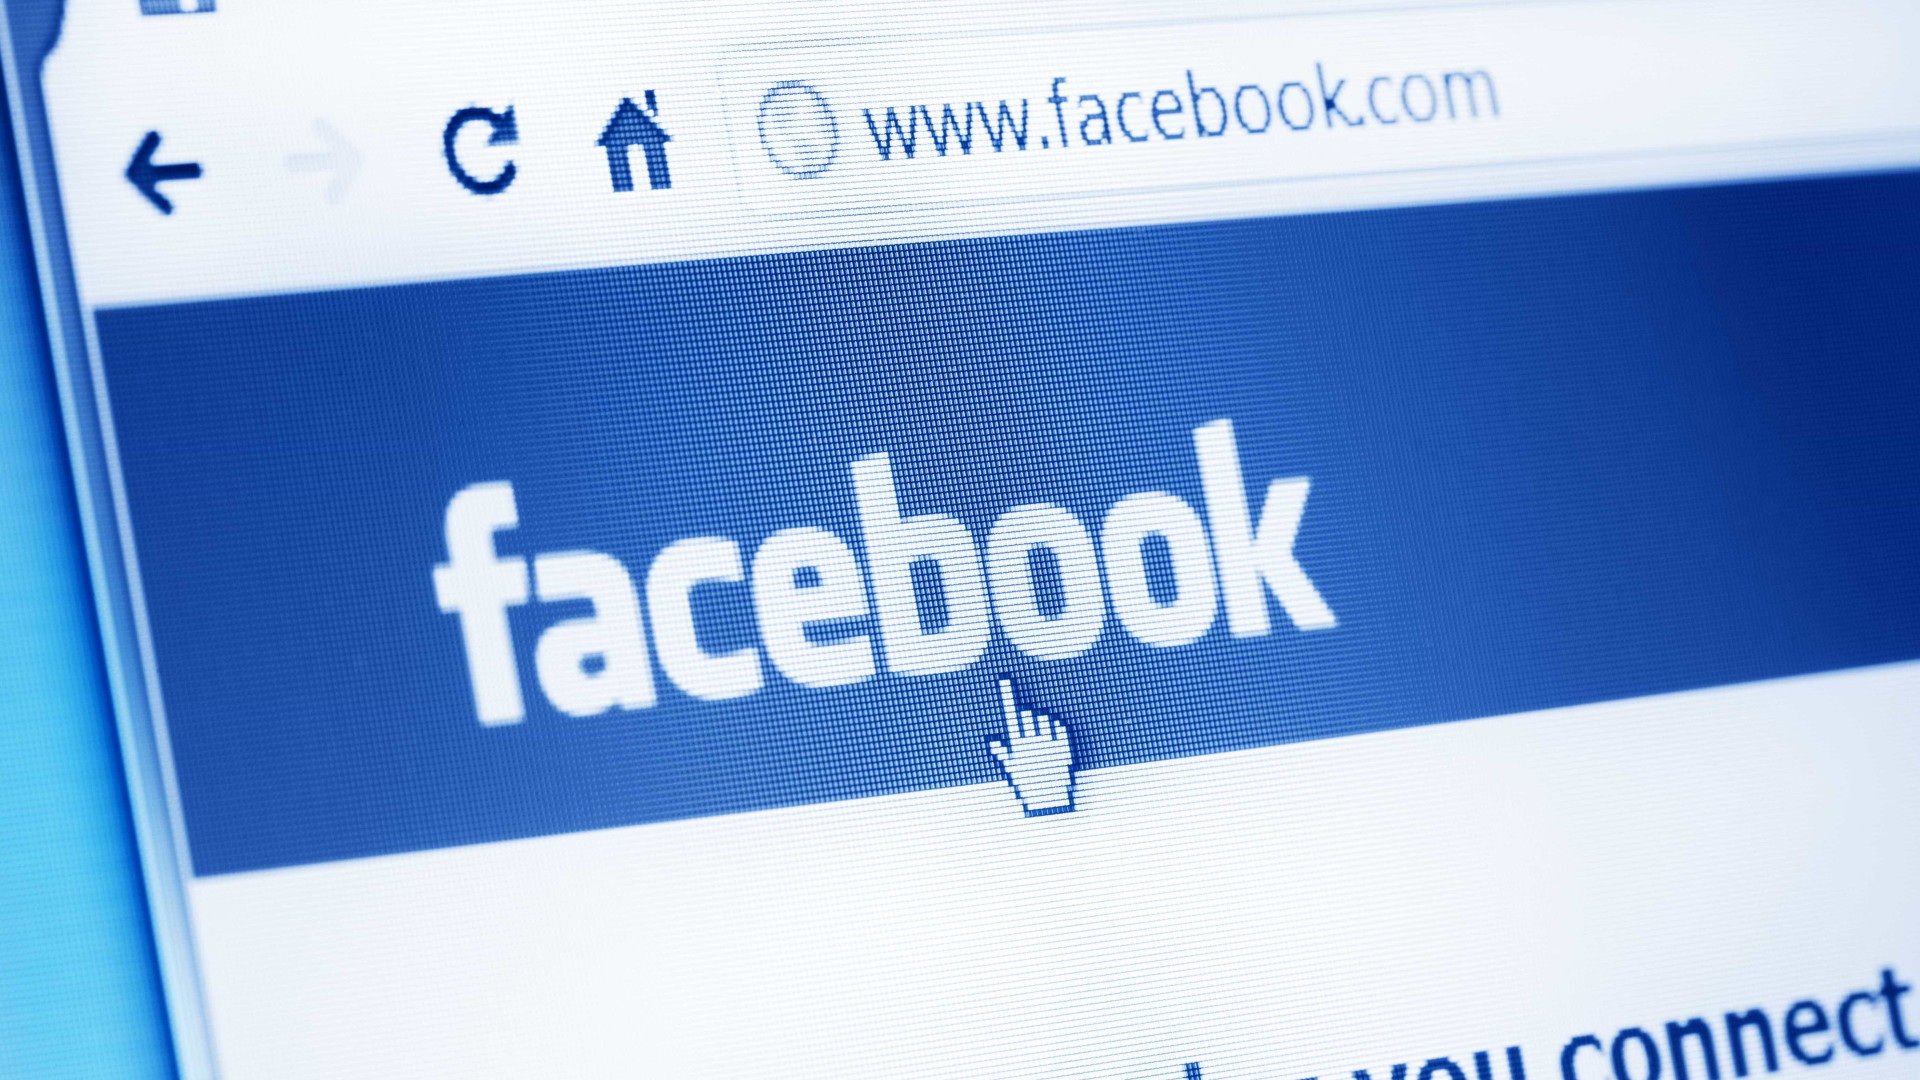 Facebook diz que exclusão de páginas ocorreu após investigação rigorosa